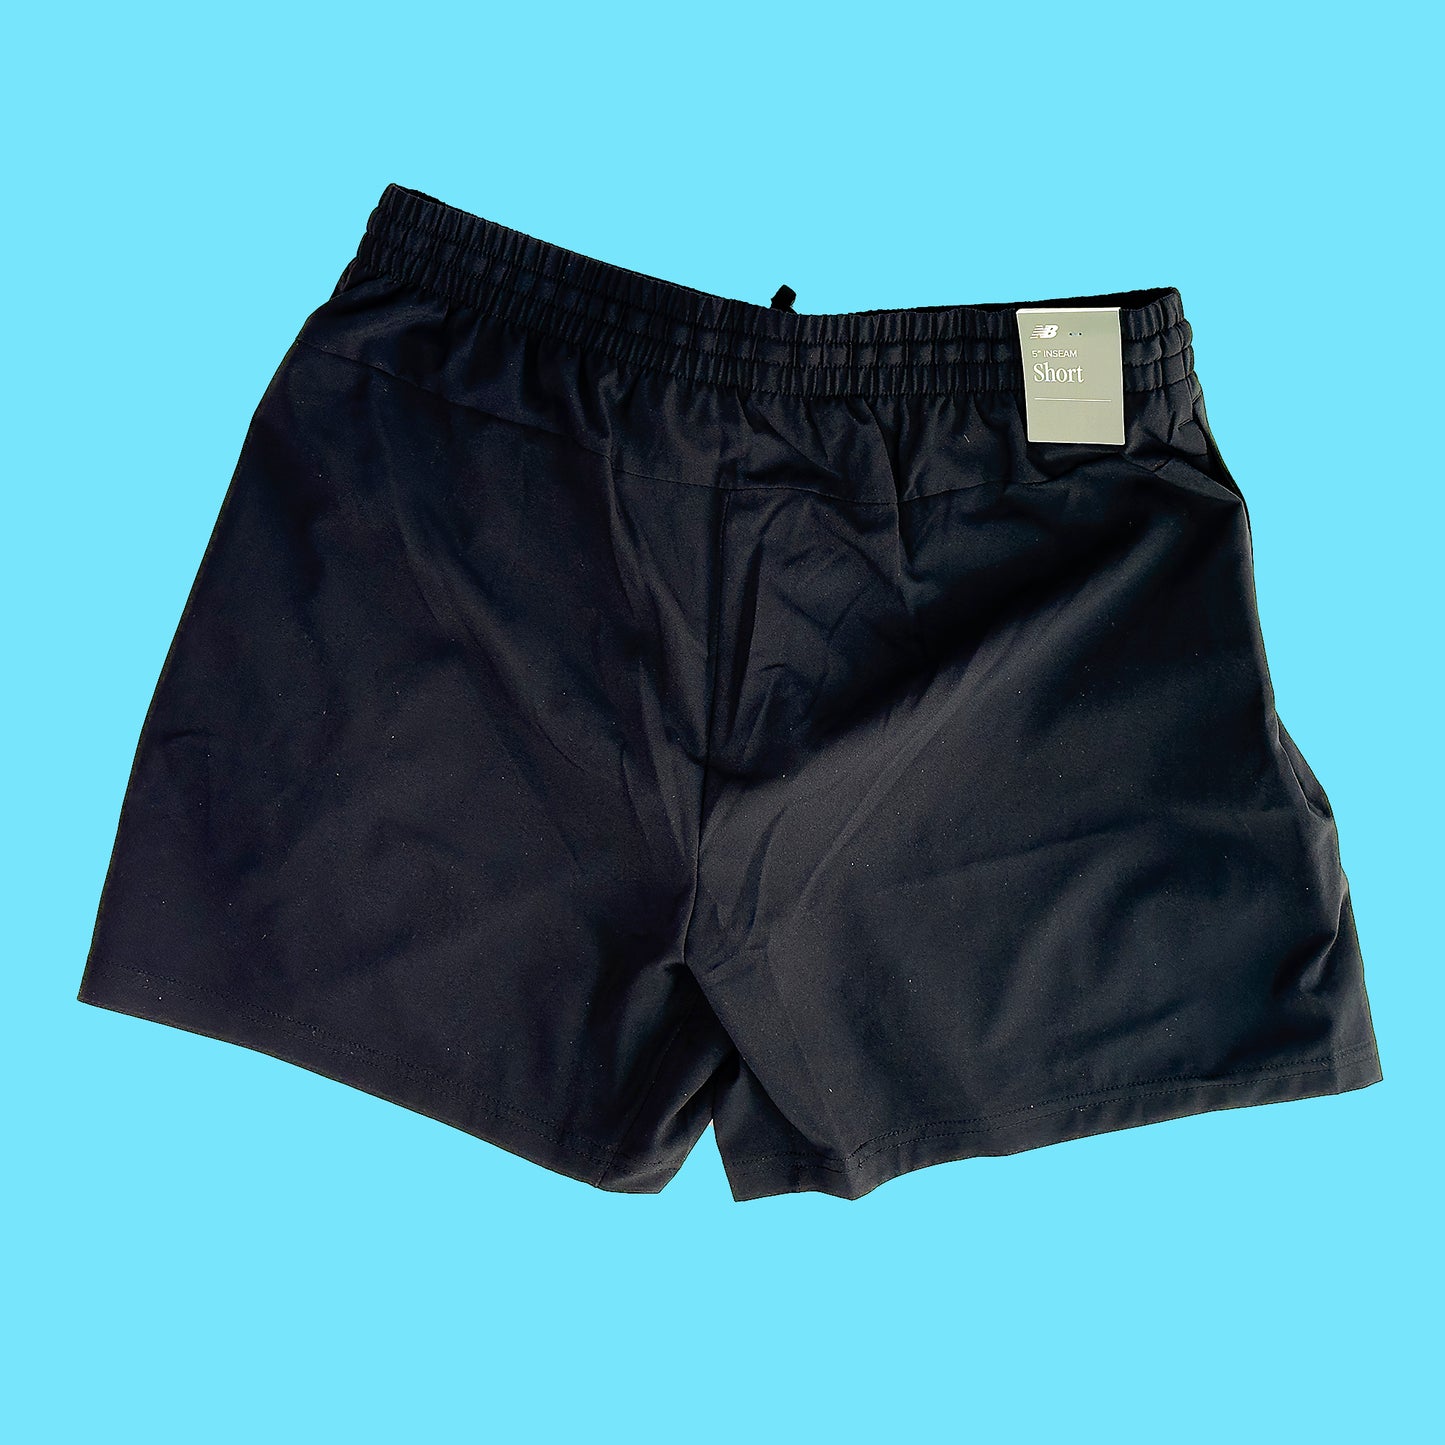 Men's Essentials Shorts - 5" - Run Big